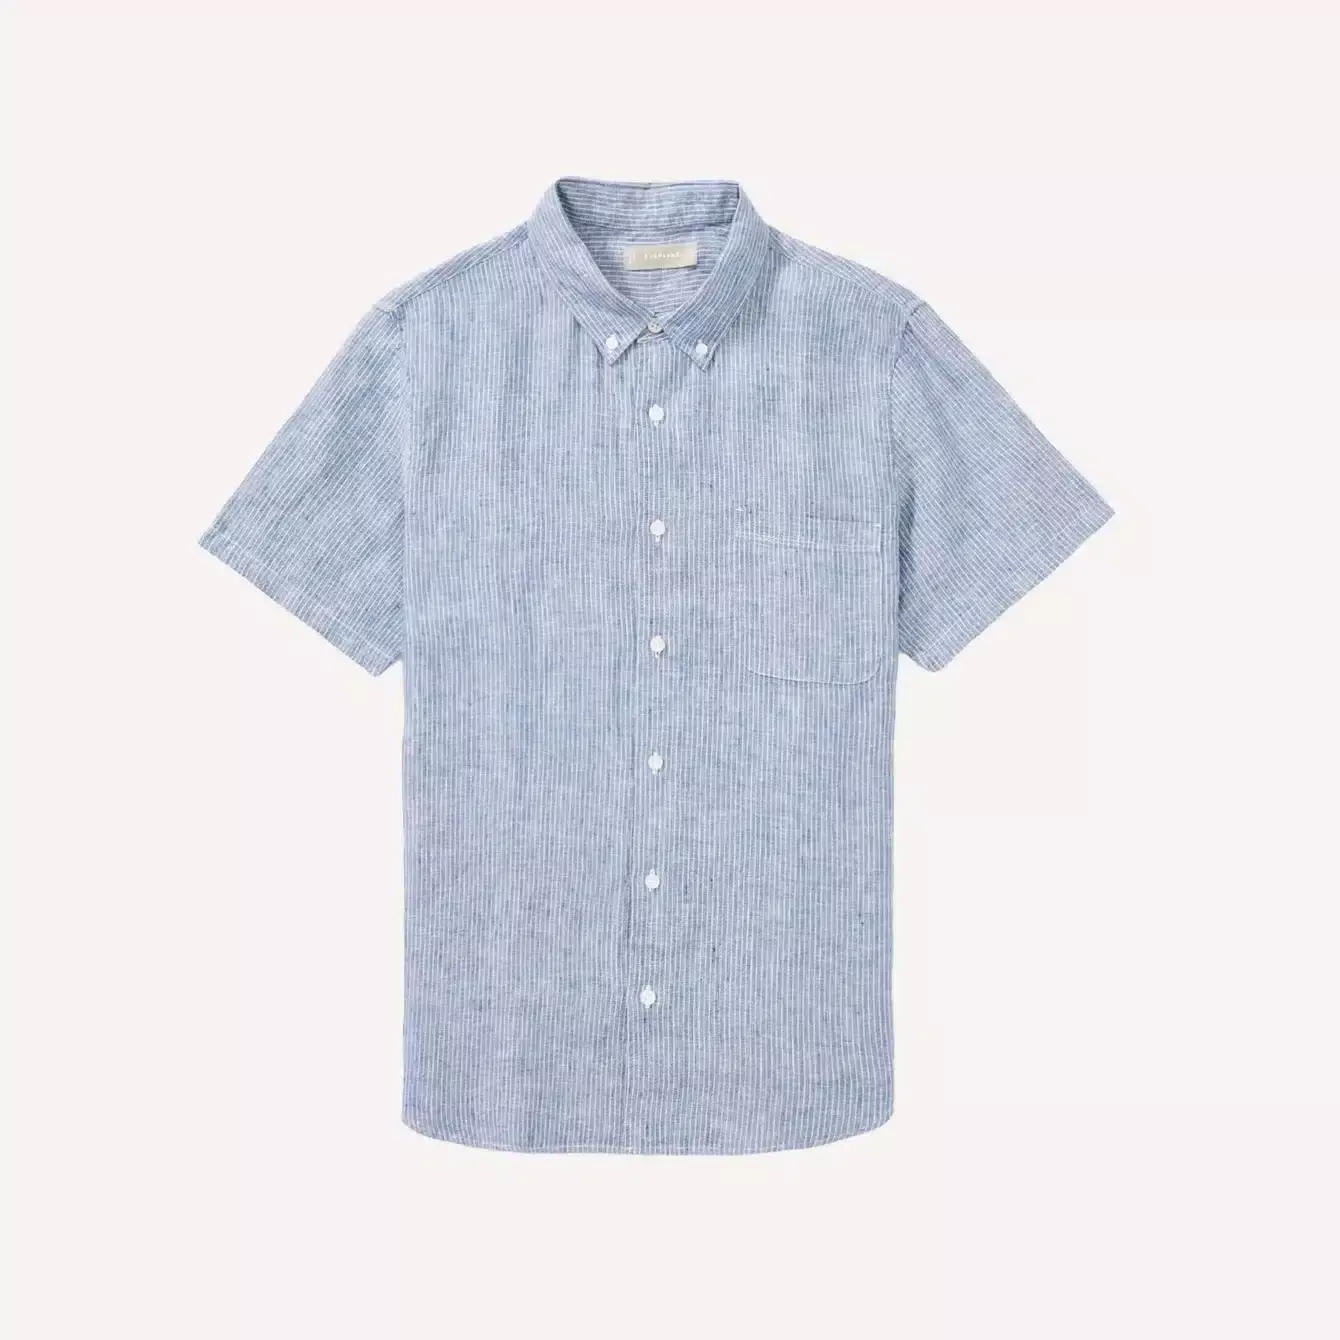 Everlane Linen Short-Sleeve Shirt